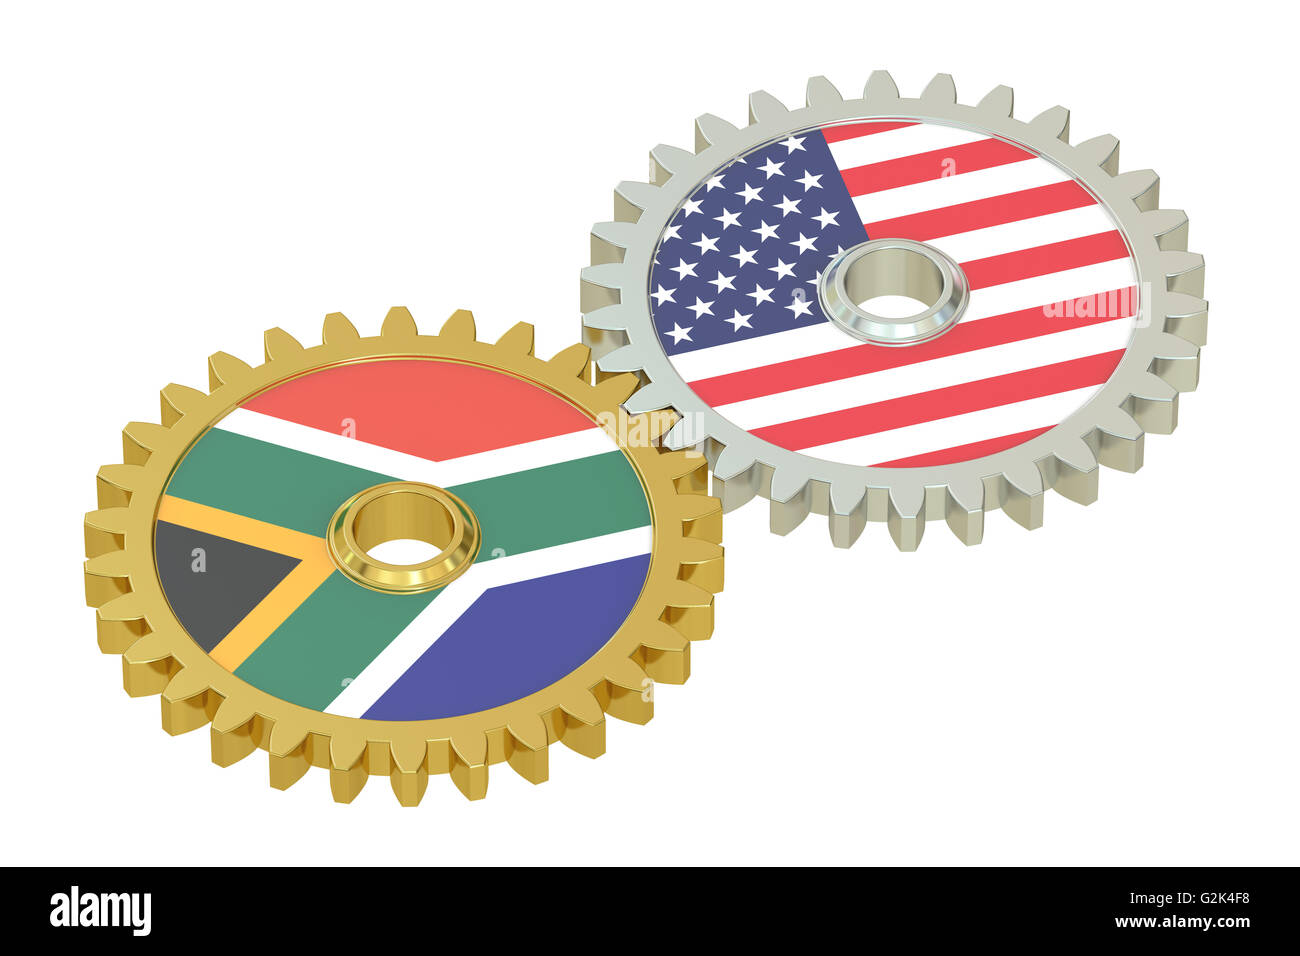 Südafrika und USA Beziehungen Konzept, Flaggen auf ein Getriebe. 3D-Rendering isoliert auf weißem Hintergrund Stockfoto